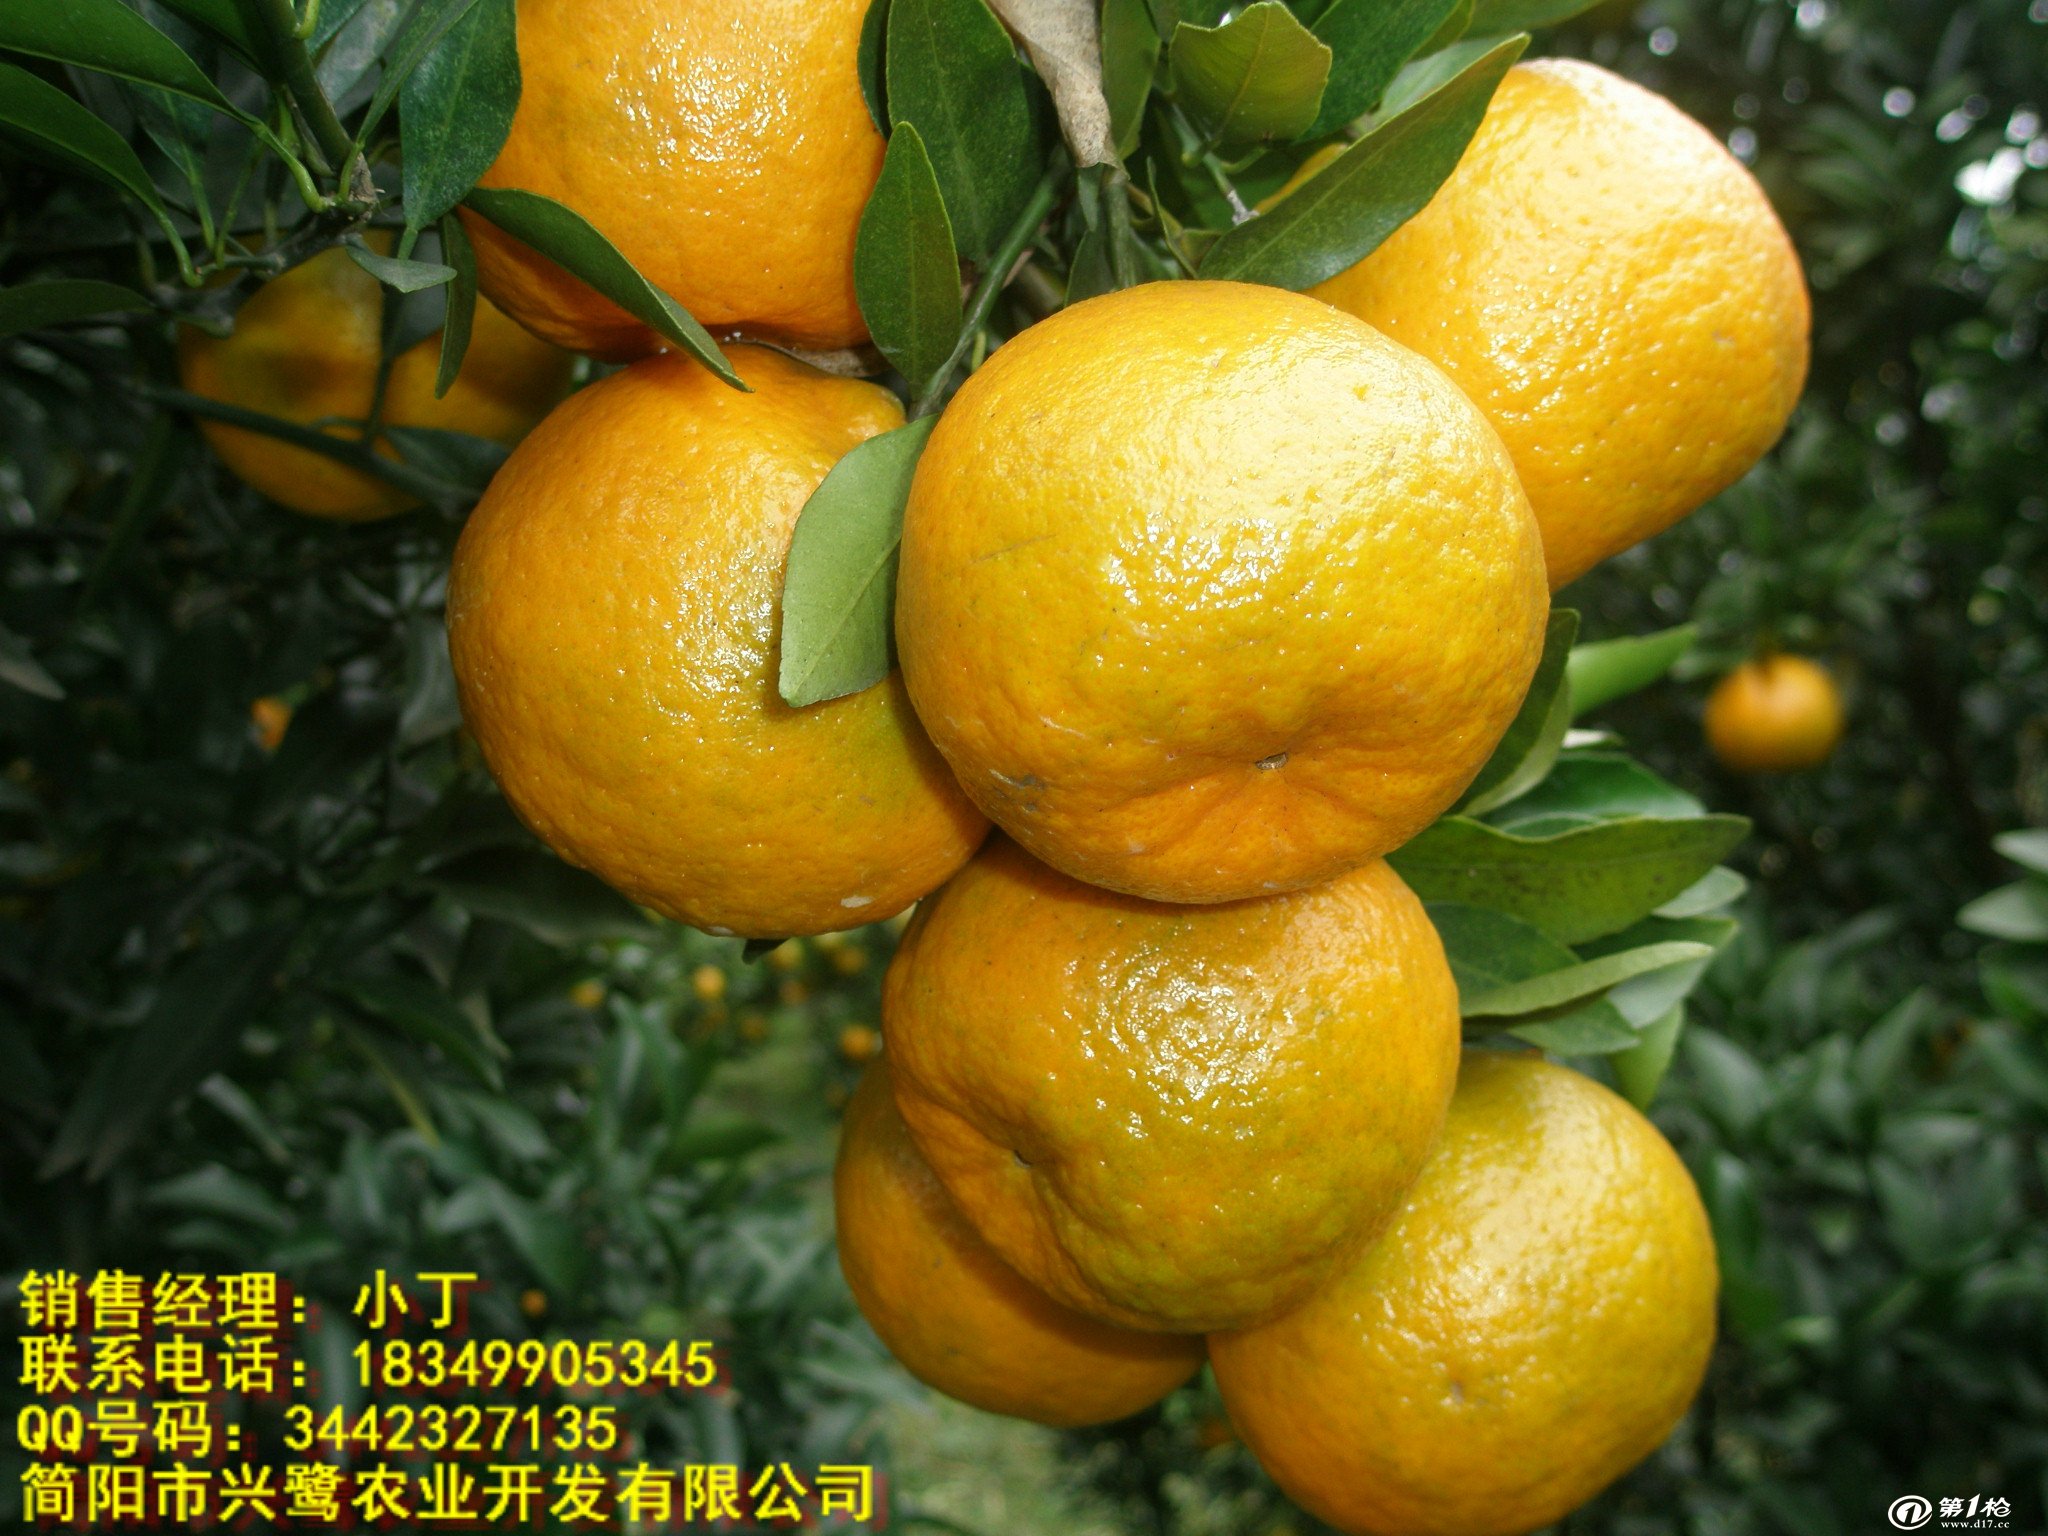 重庆柑橘苗价格 重庆柑橘苗种植技术 重庆柑橘